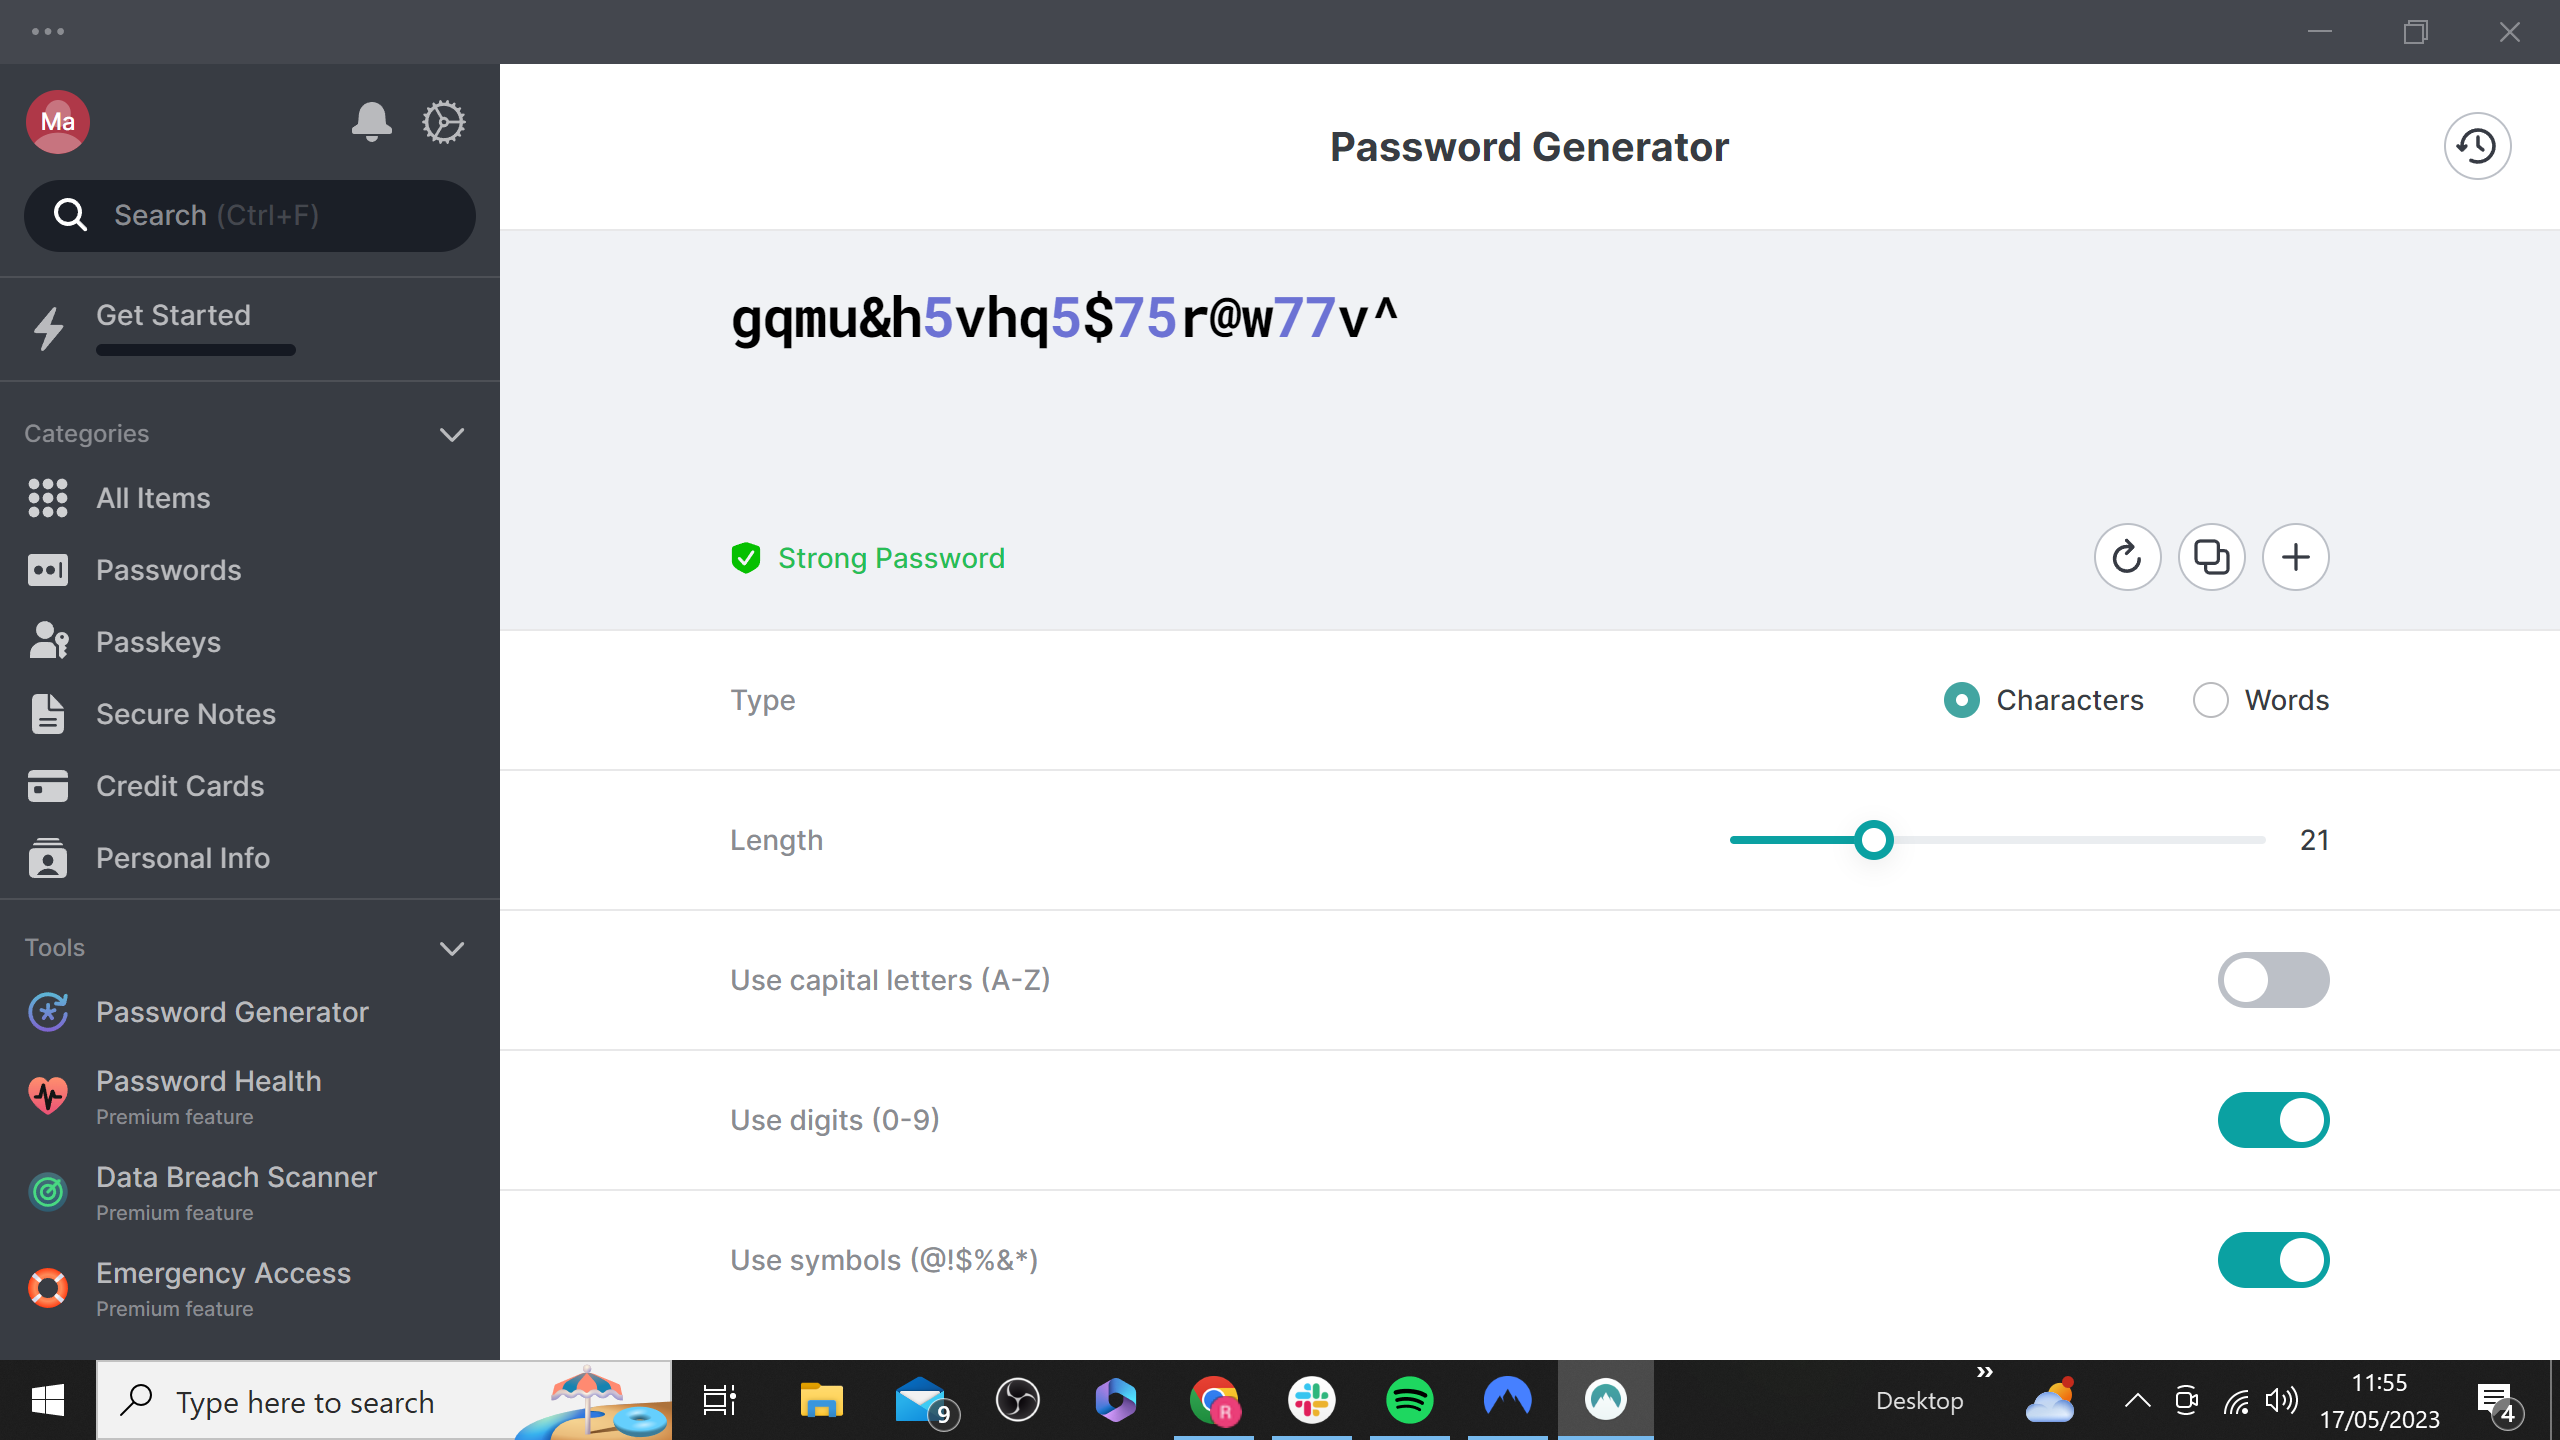 NordPass password generator